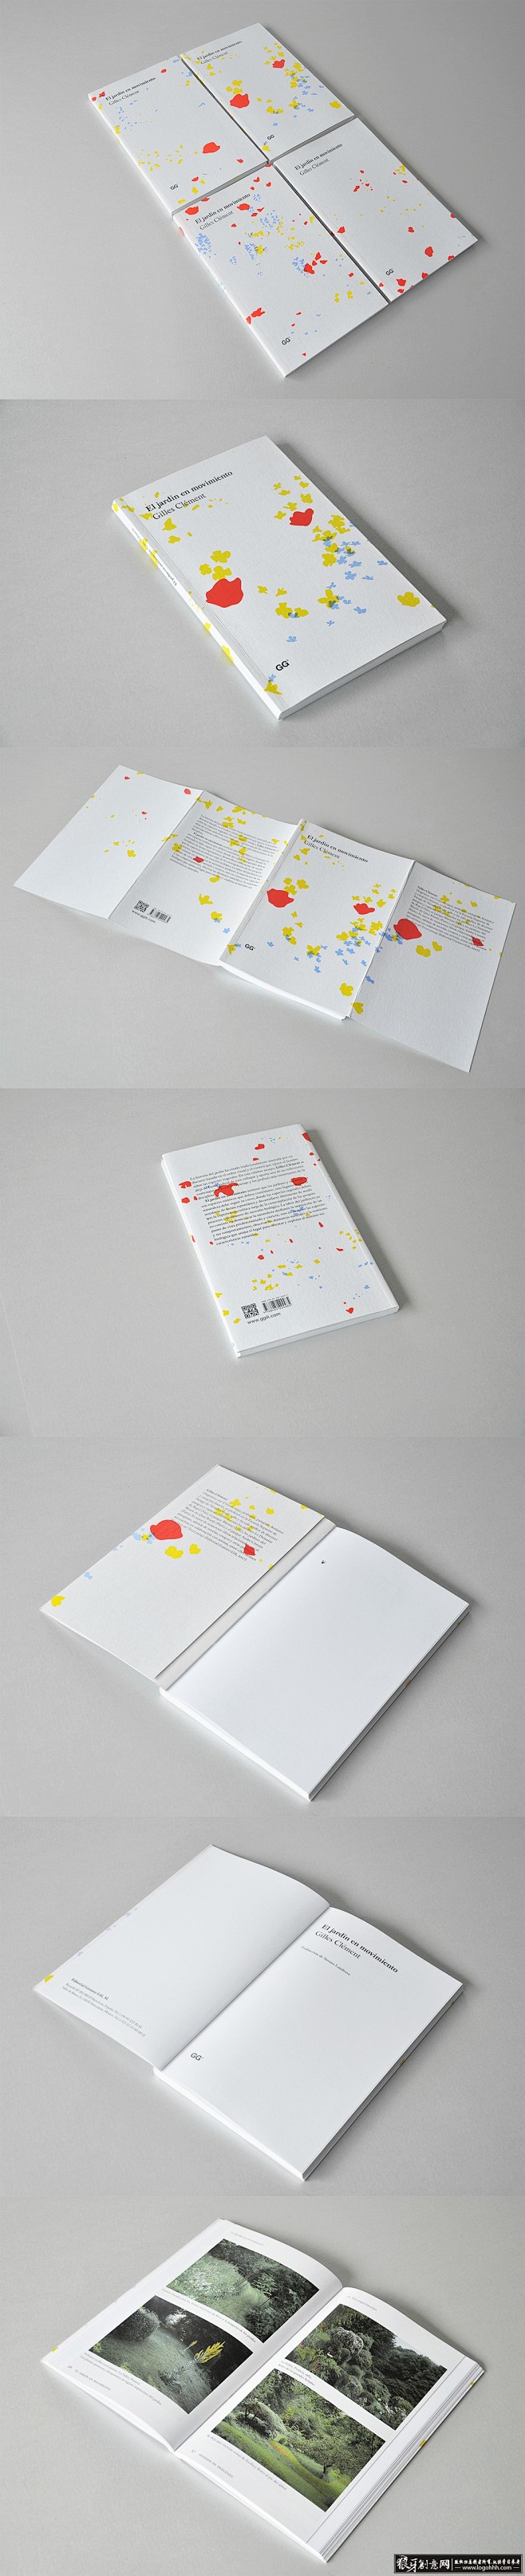 创意画册 喷溅元素画册封面设计 书籍装帧...